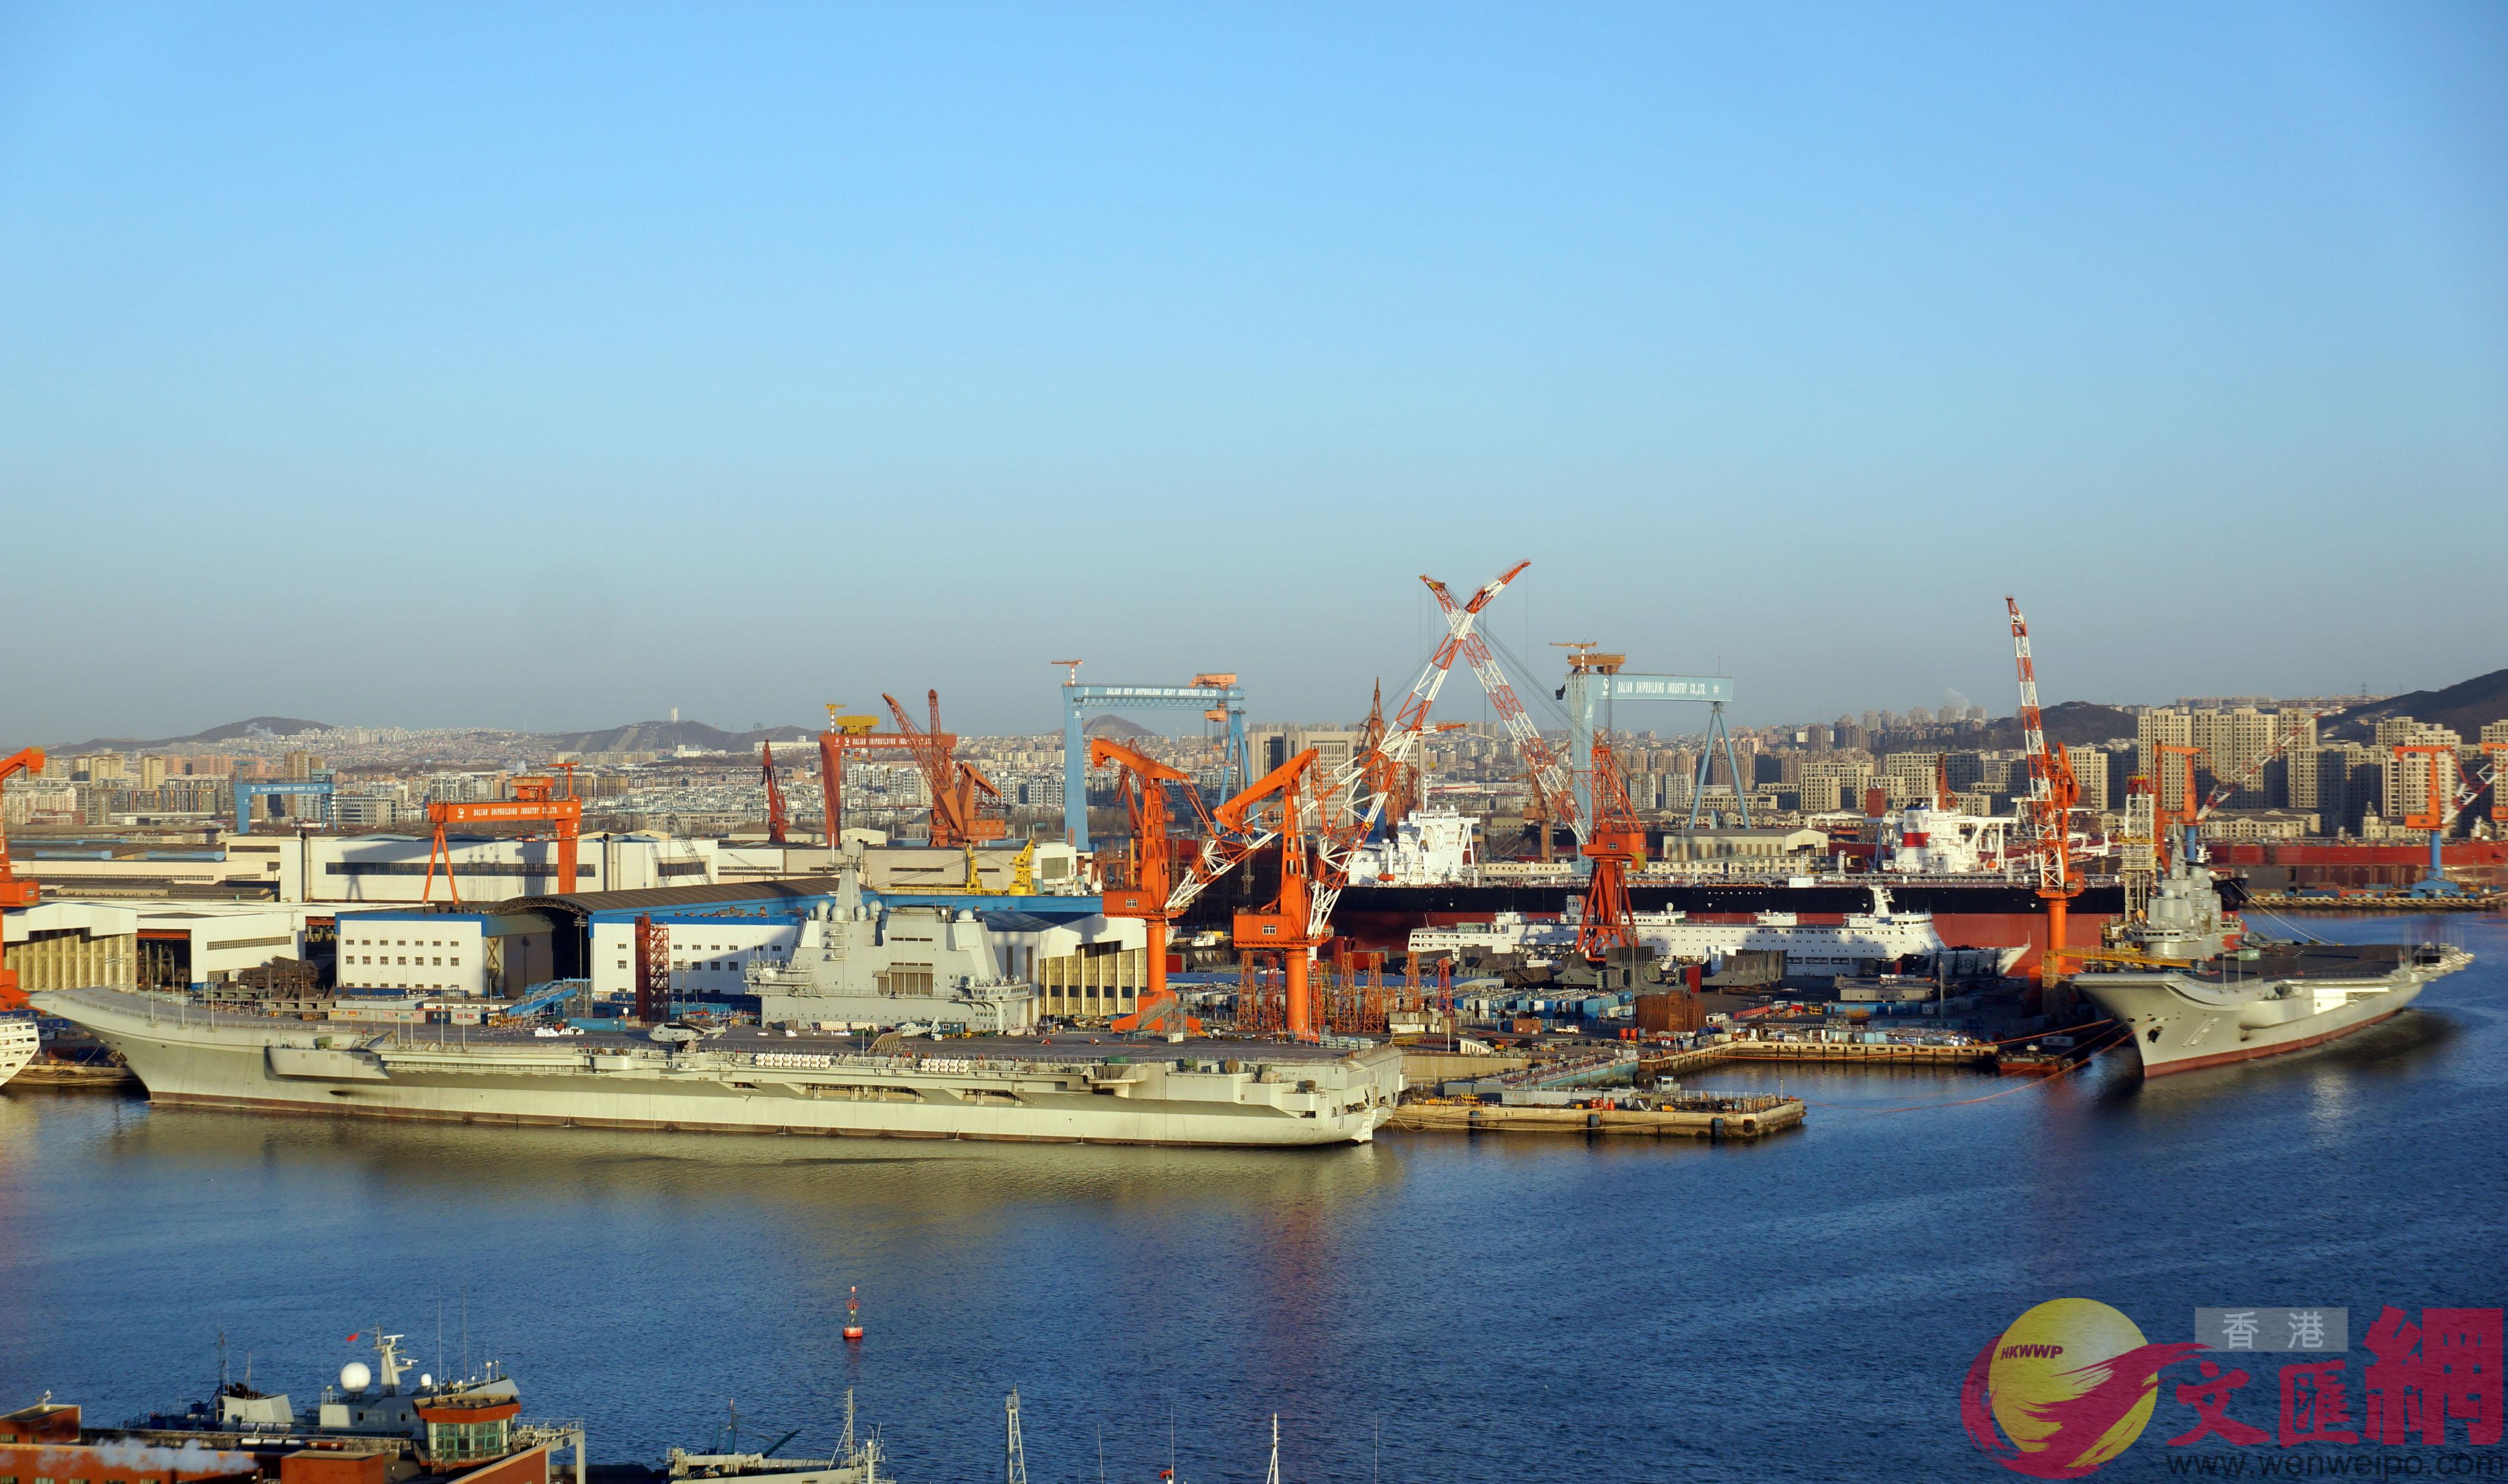 外界預測A遼寧艦和國產航母可能會參加4月23日海軍節的國際閱艦式C